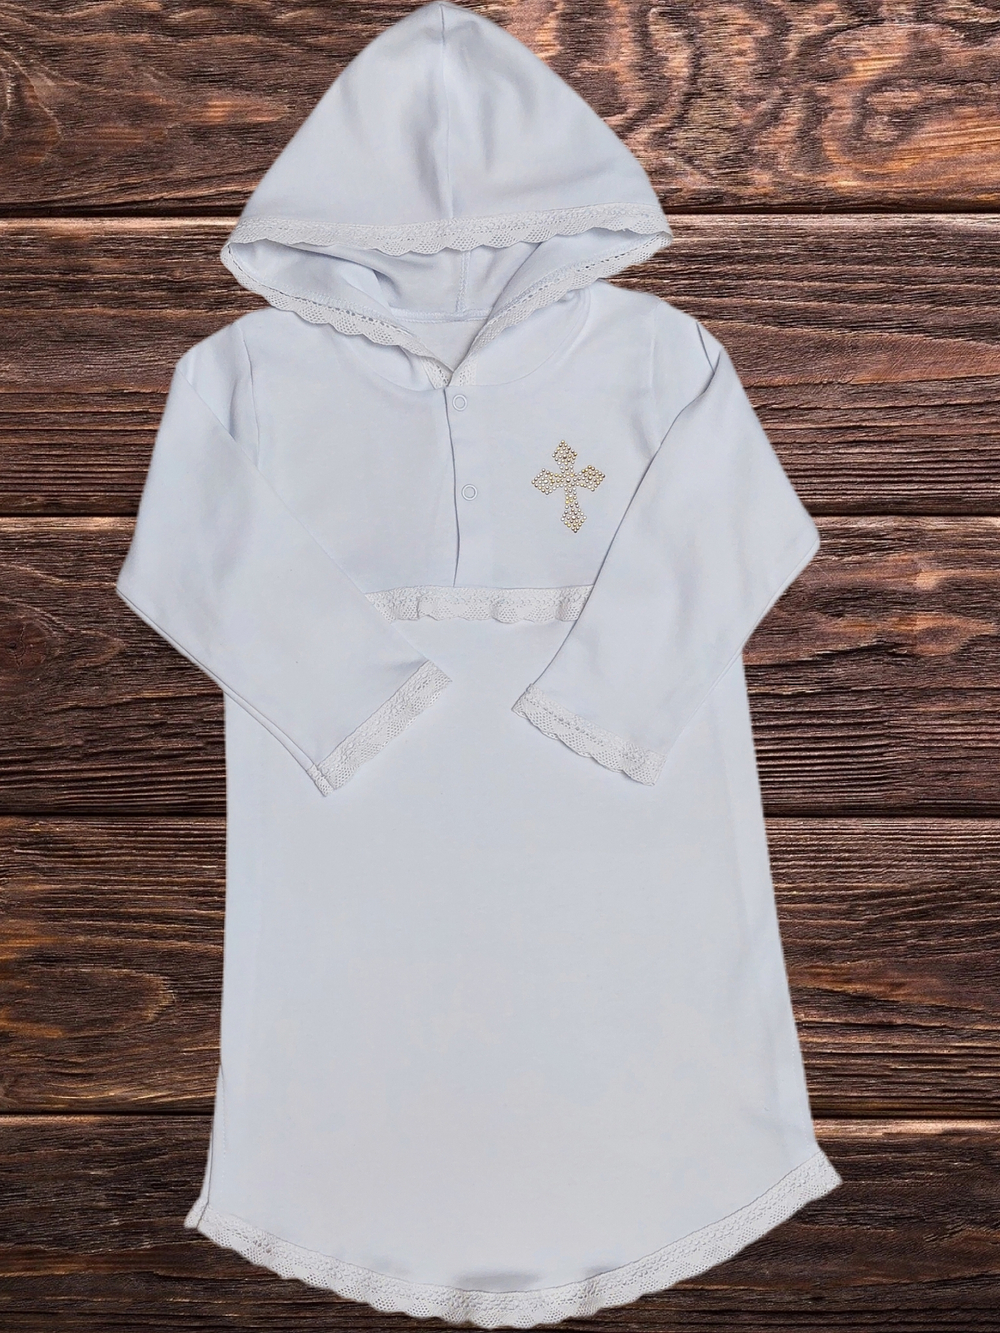 Крестильный набор Крестнице (рубашка с капюшоном) рост 74-80